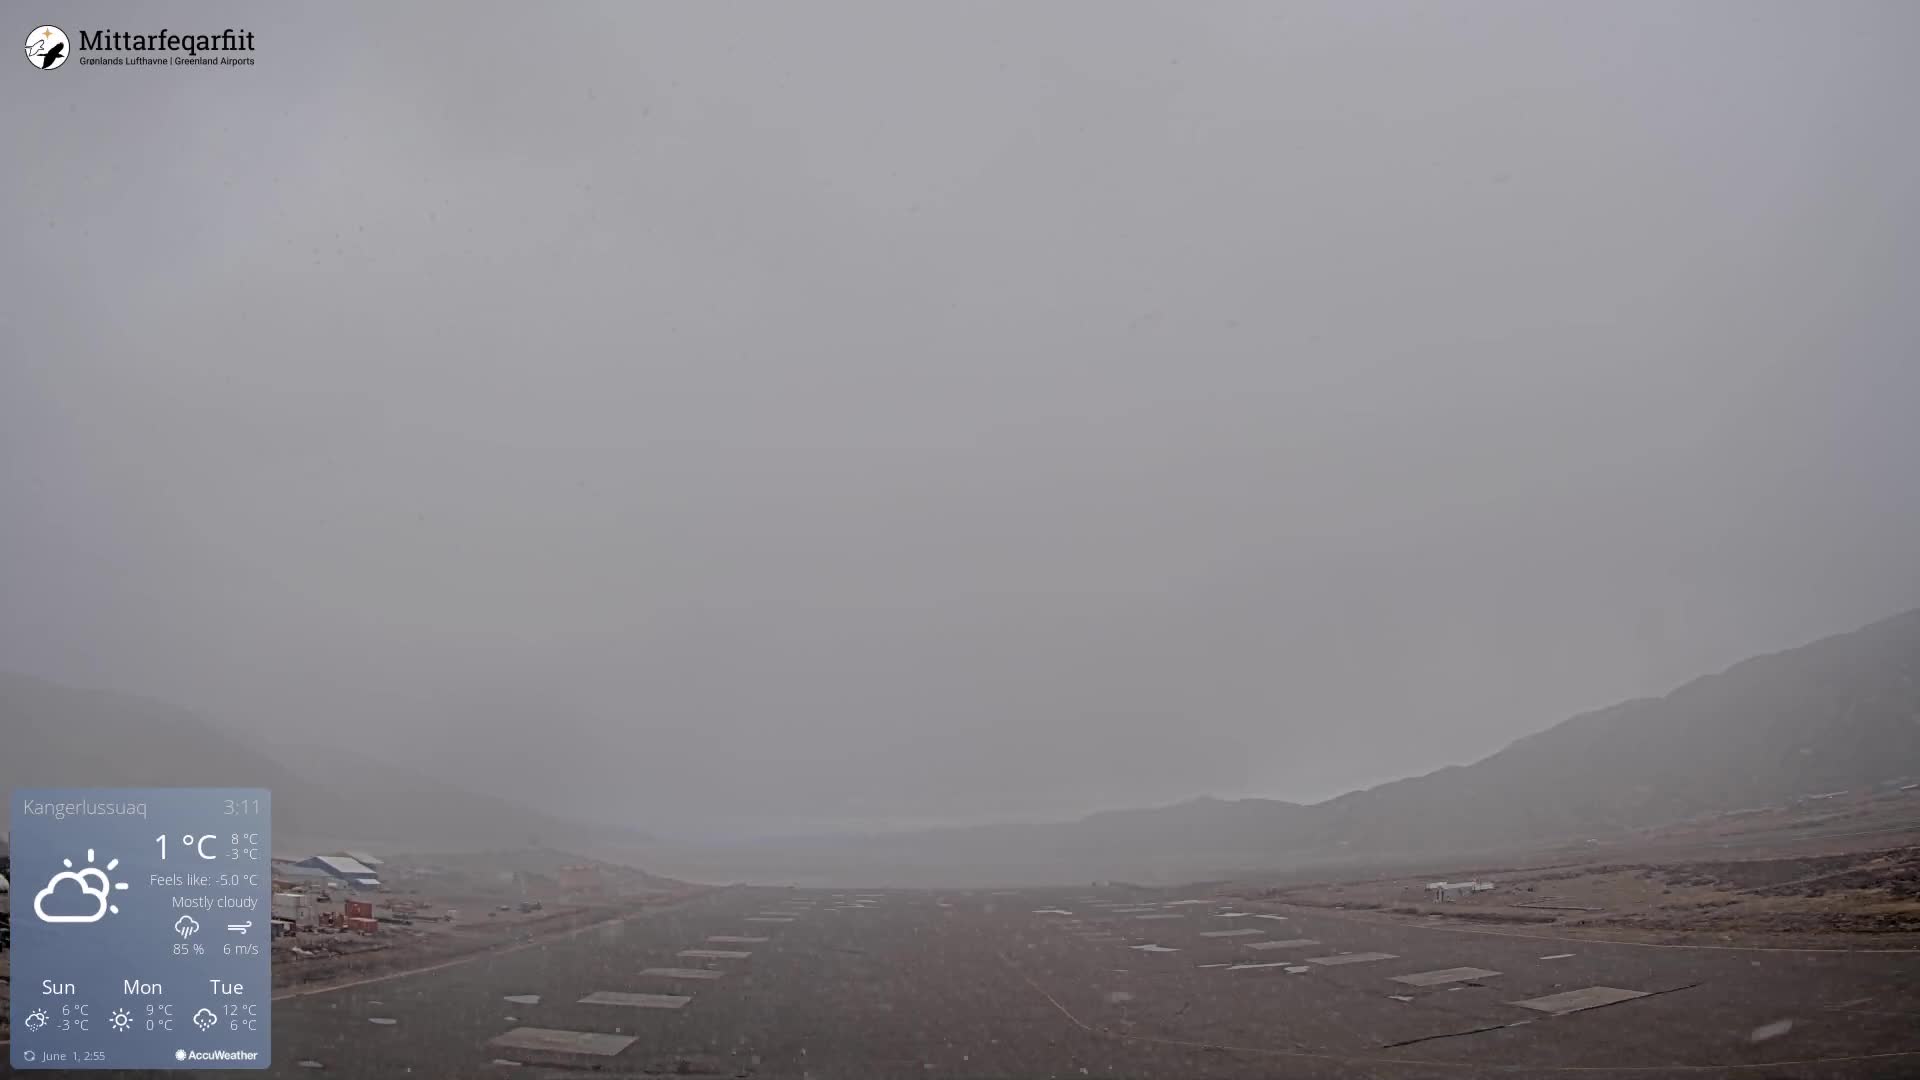 Kangerlussuaq Mar. 03:35